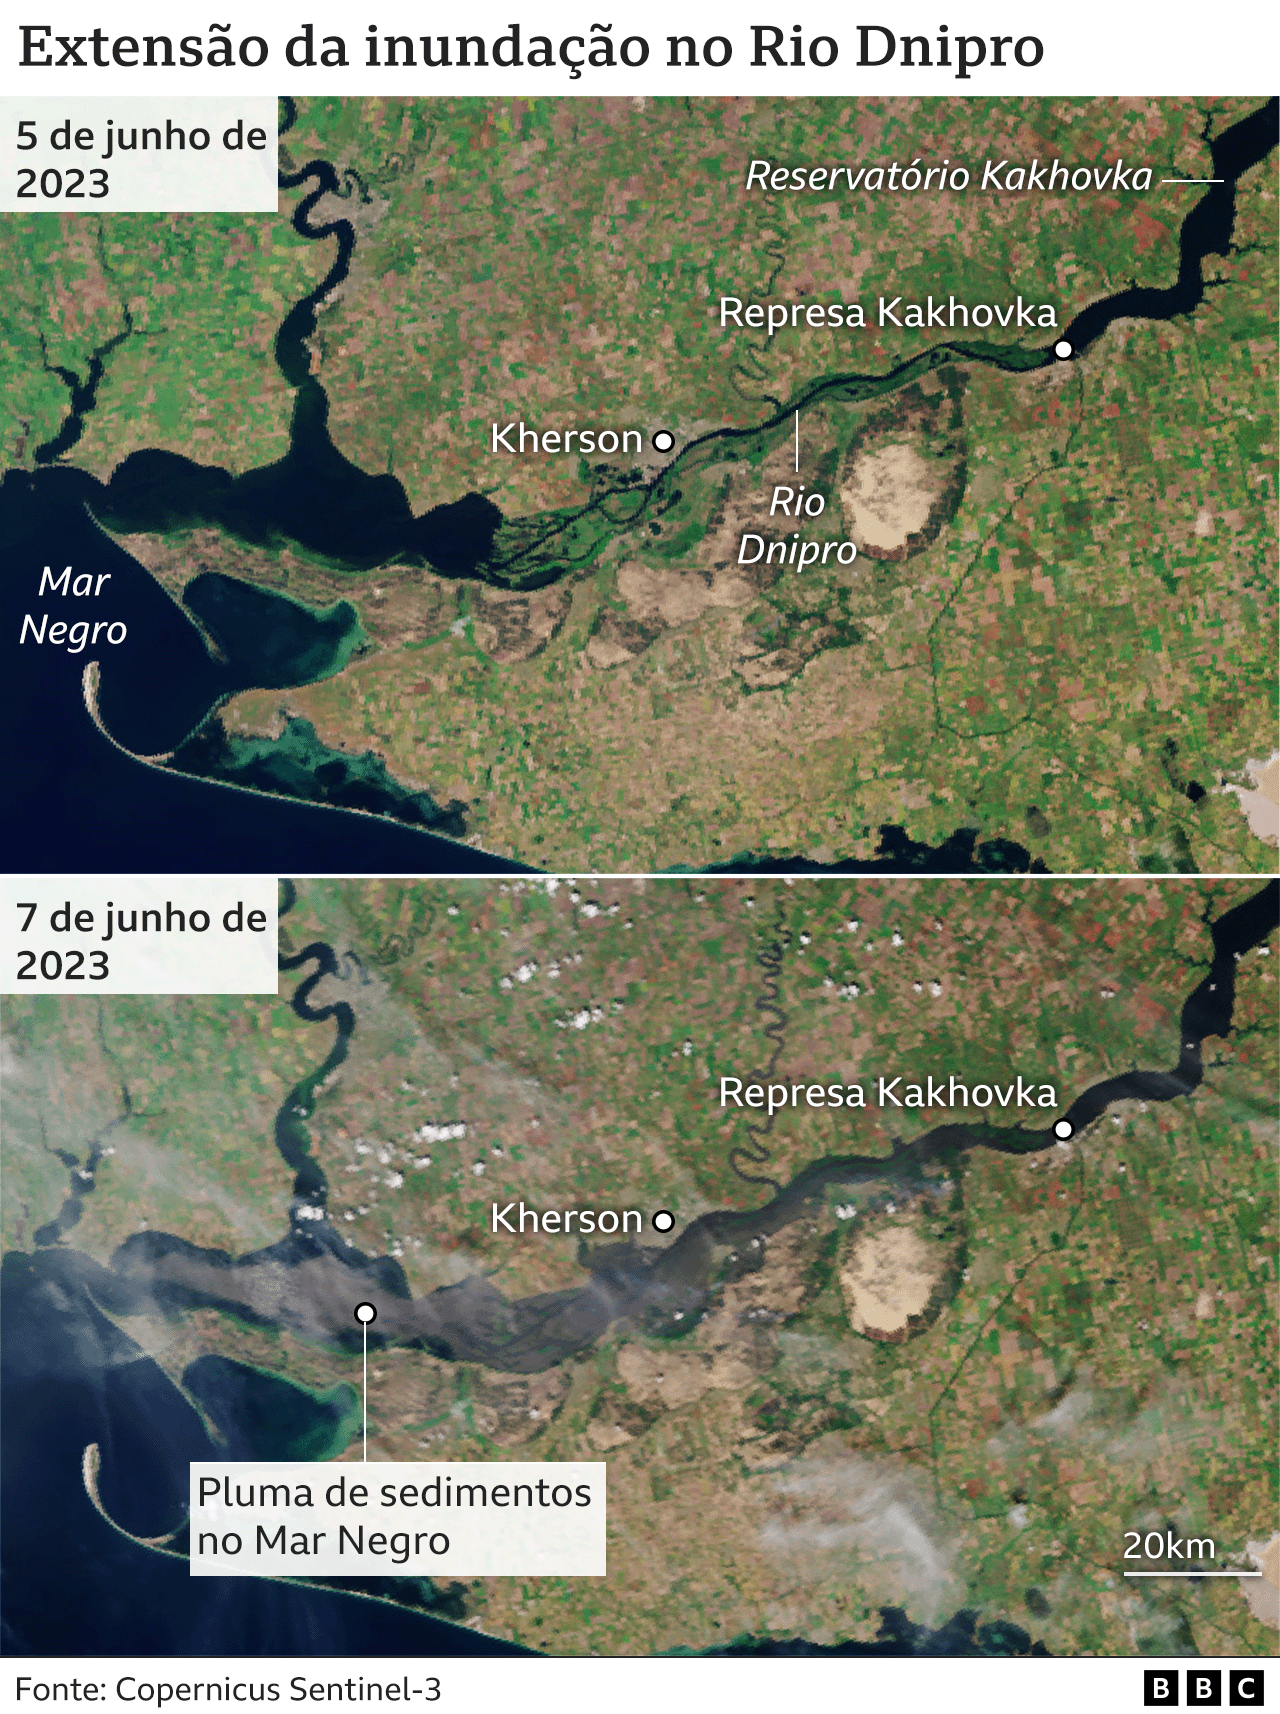 As imagens de satélite também mostram a extensão das inundações no Rio Dnipro. Uma pluma de sedimentos é vista na imagem capturada em 7 de junho